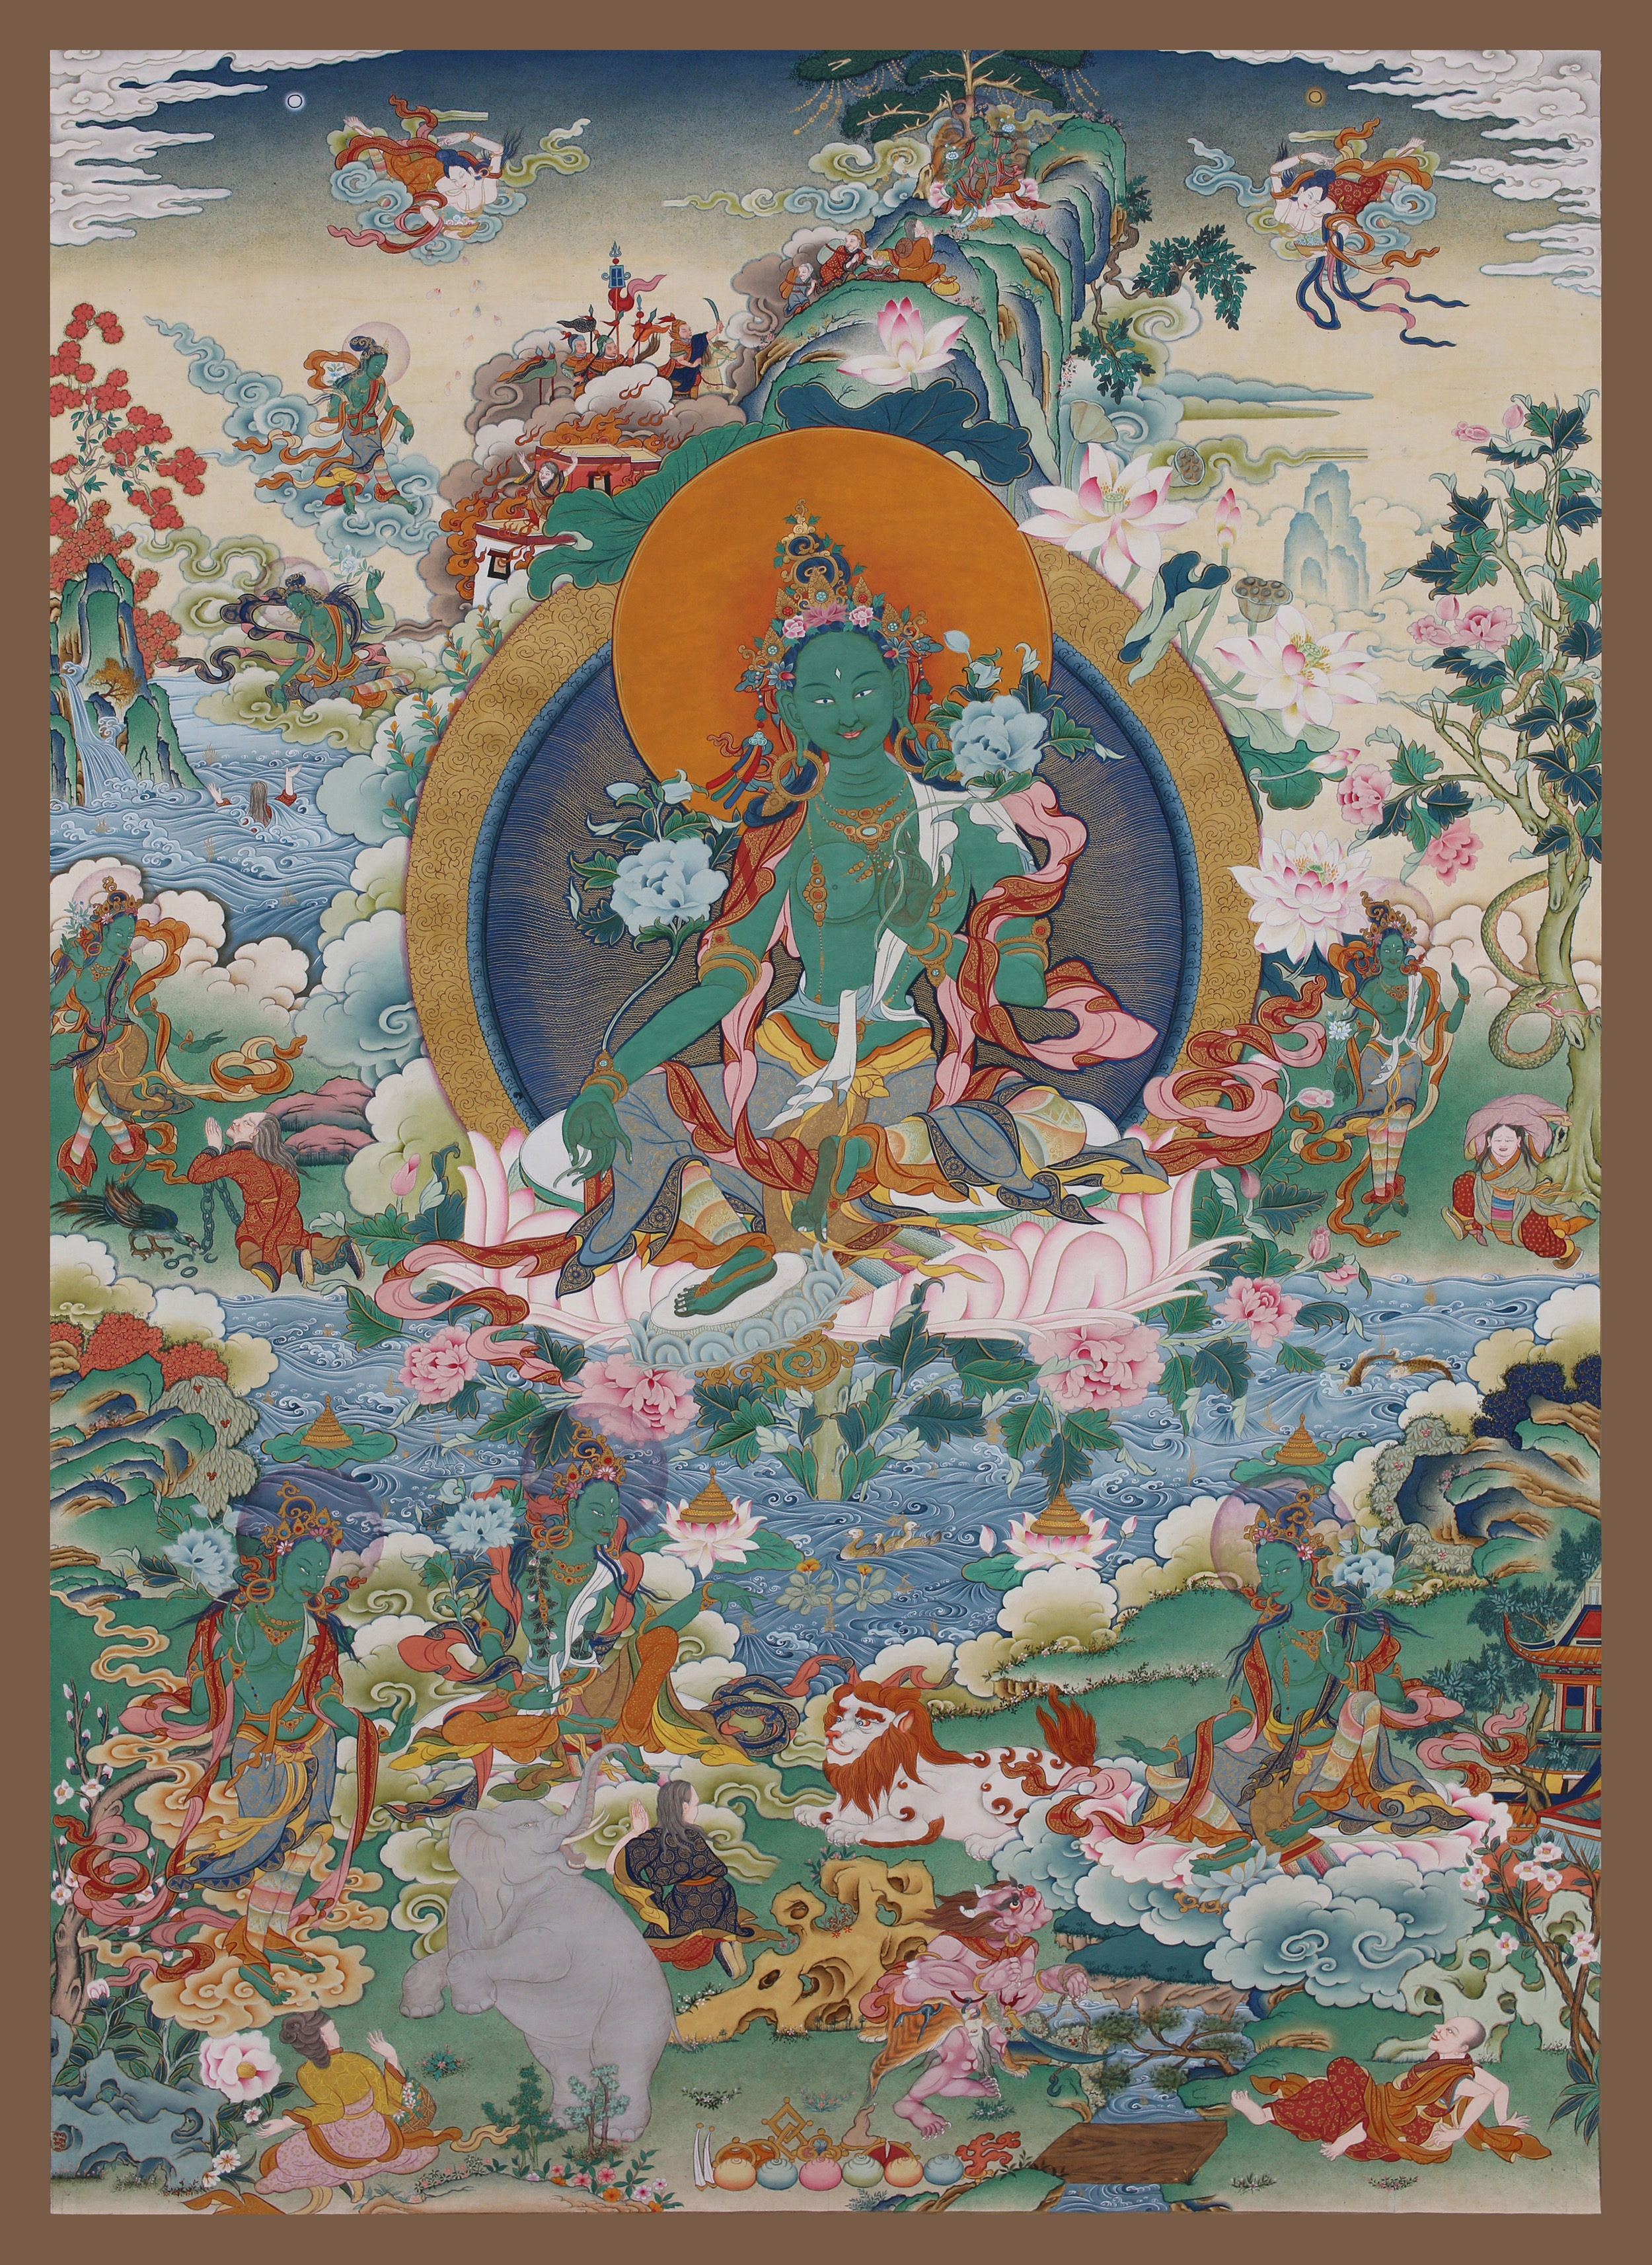 西藏唐卡大师丹巴绕旦:唐卡馈赠给我们的礼物